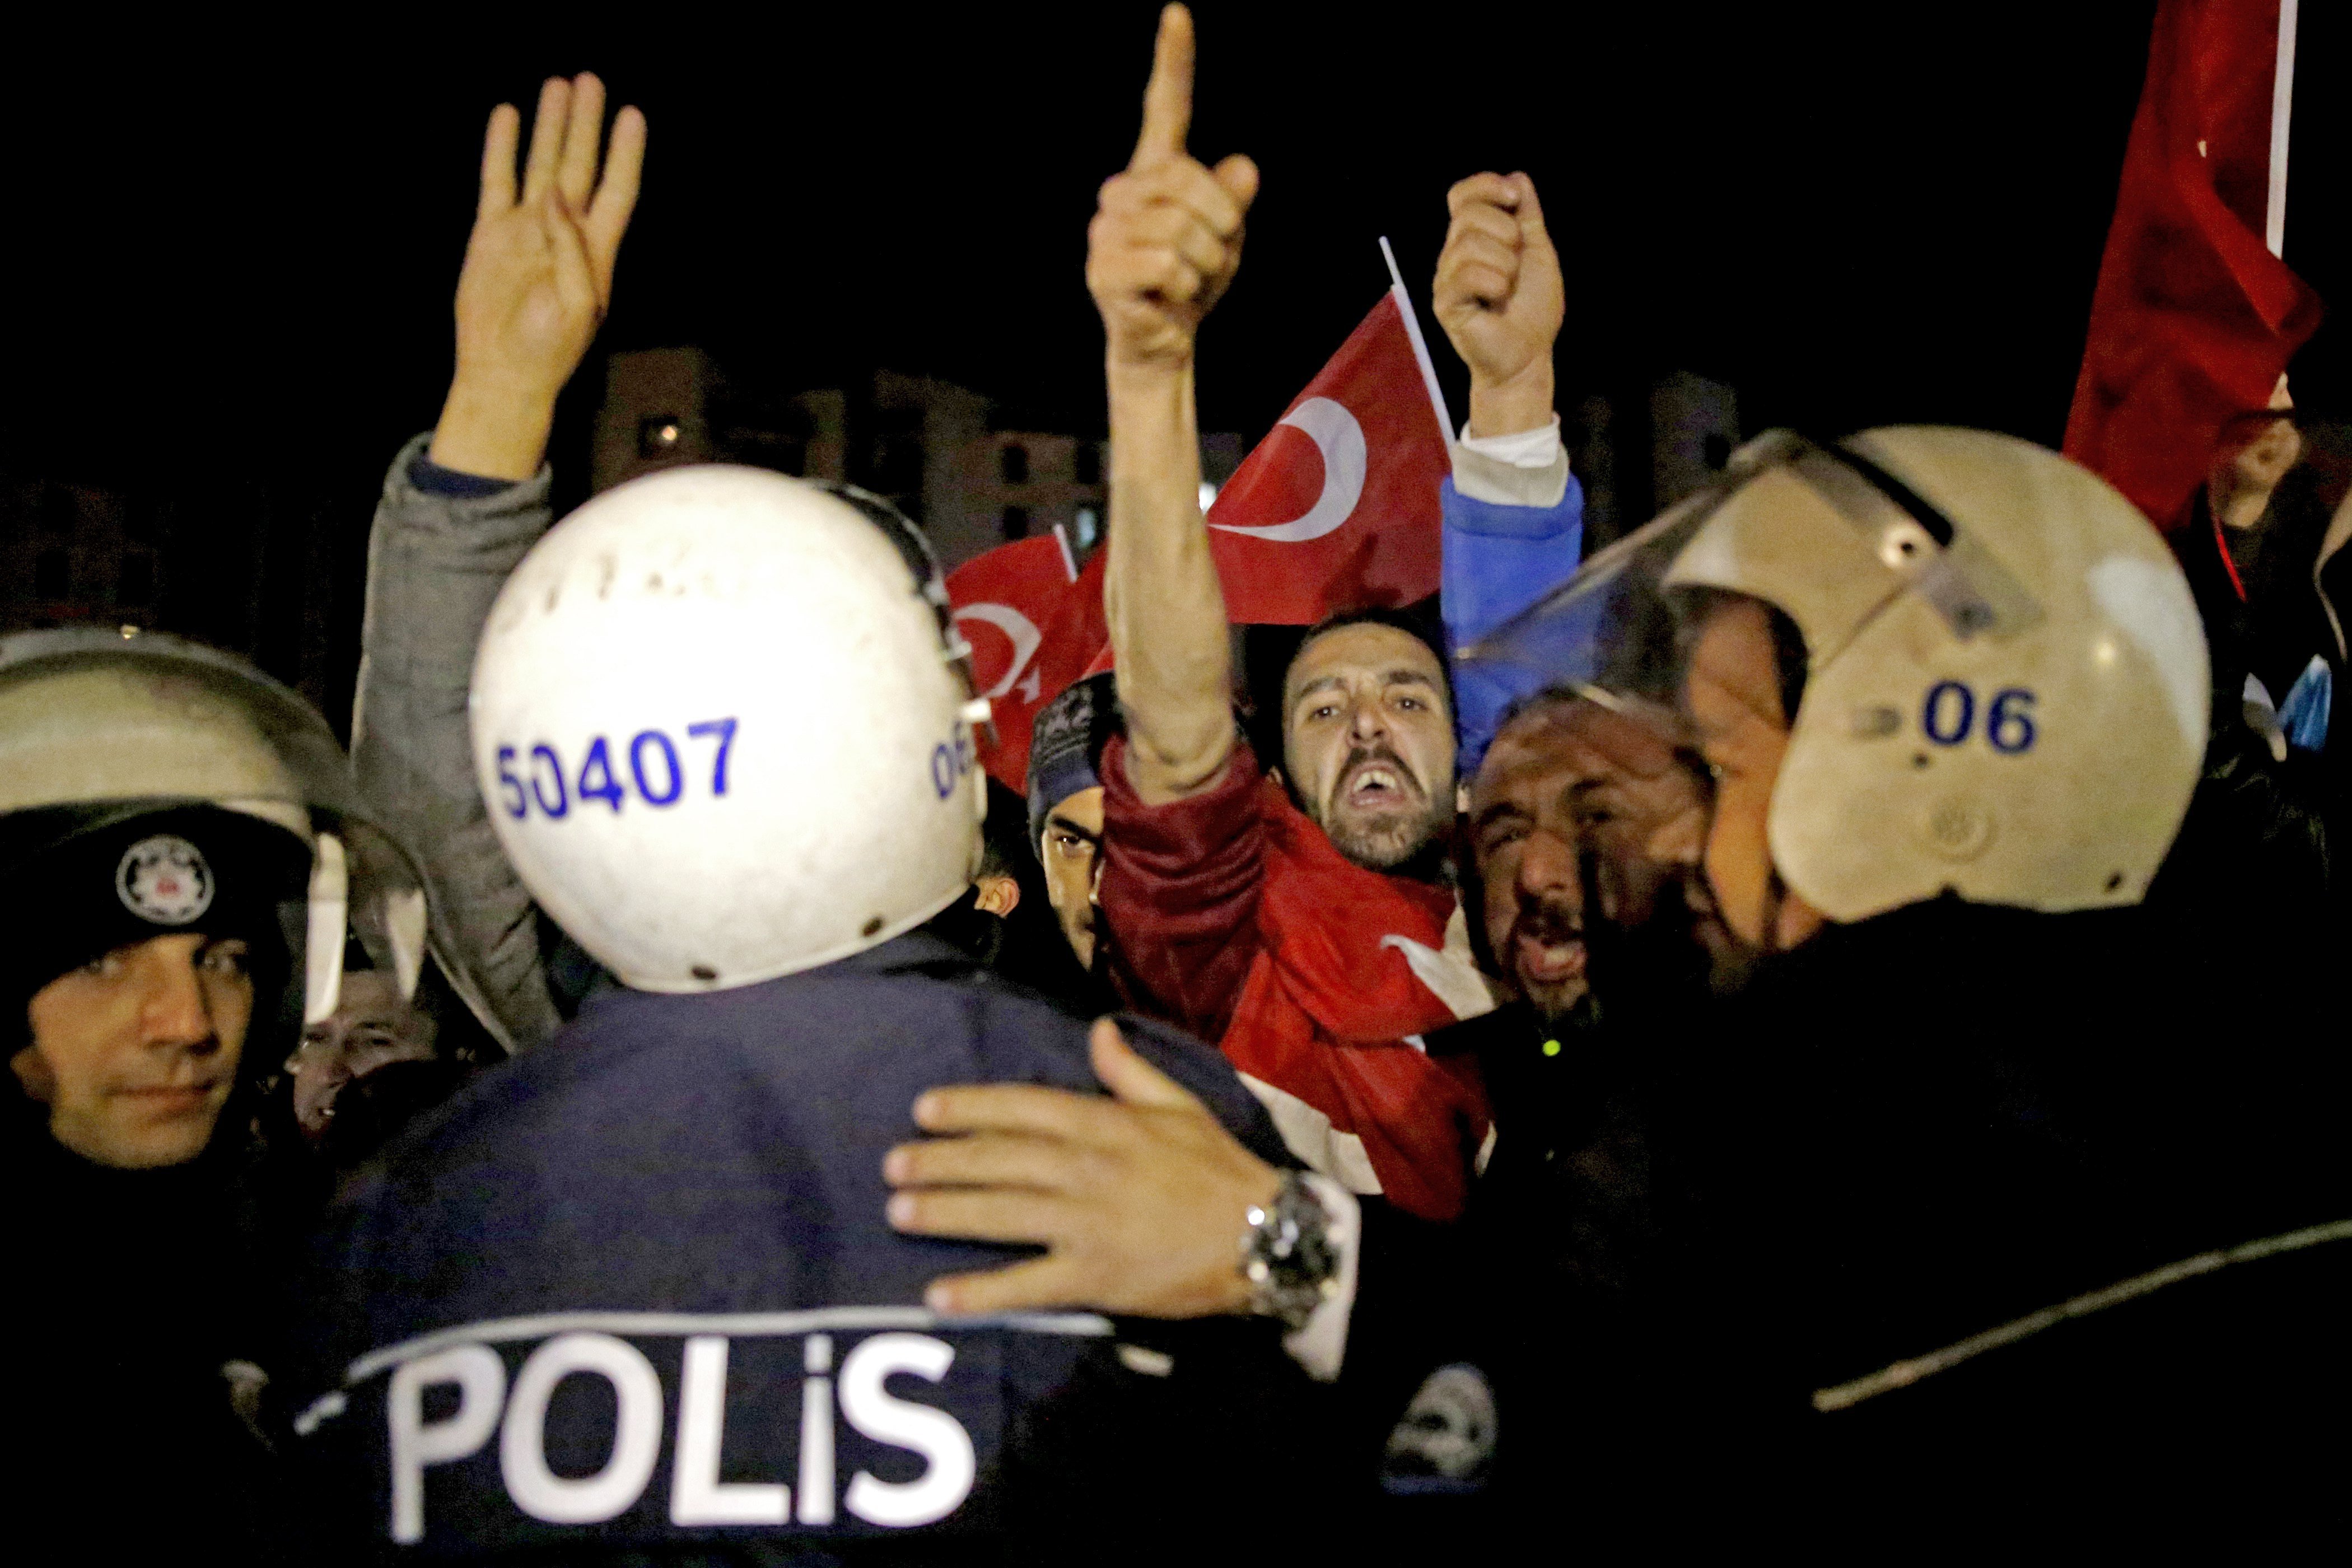 Crisi diplomàtica entre els Països Baixos i Turquia